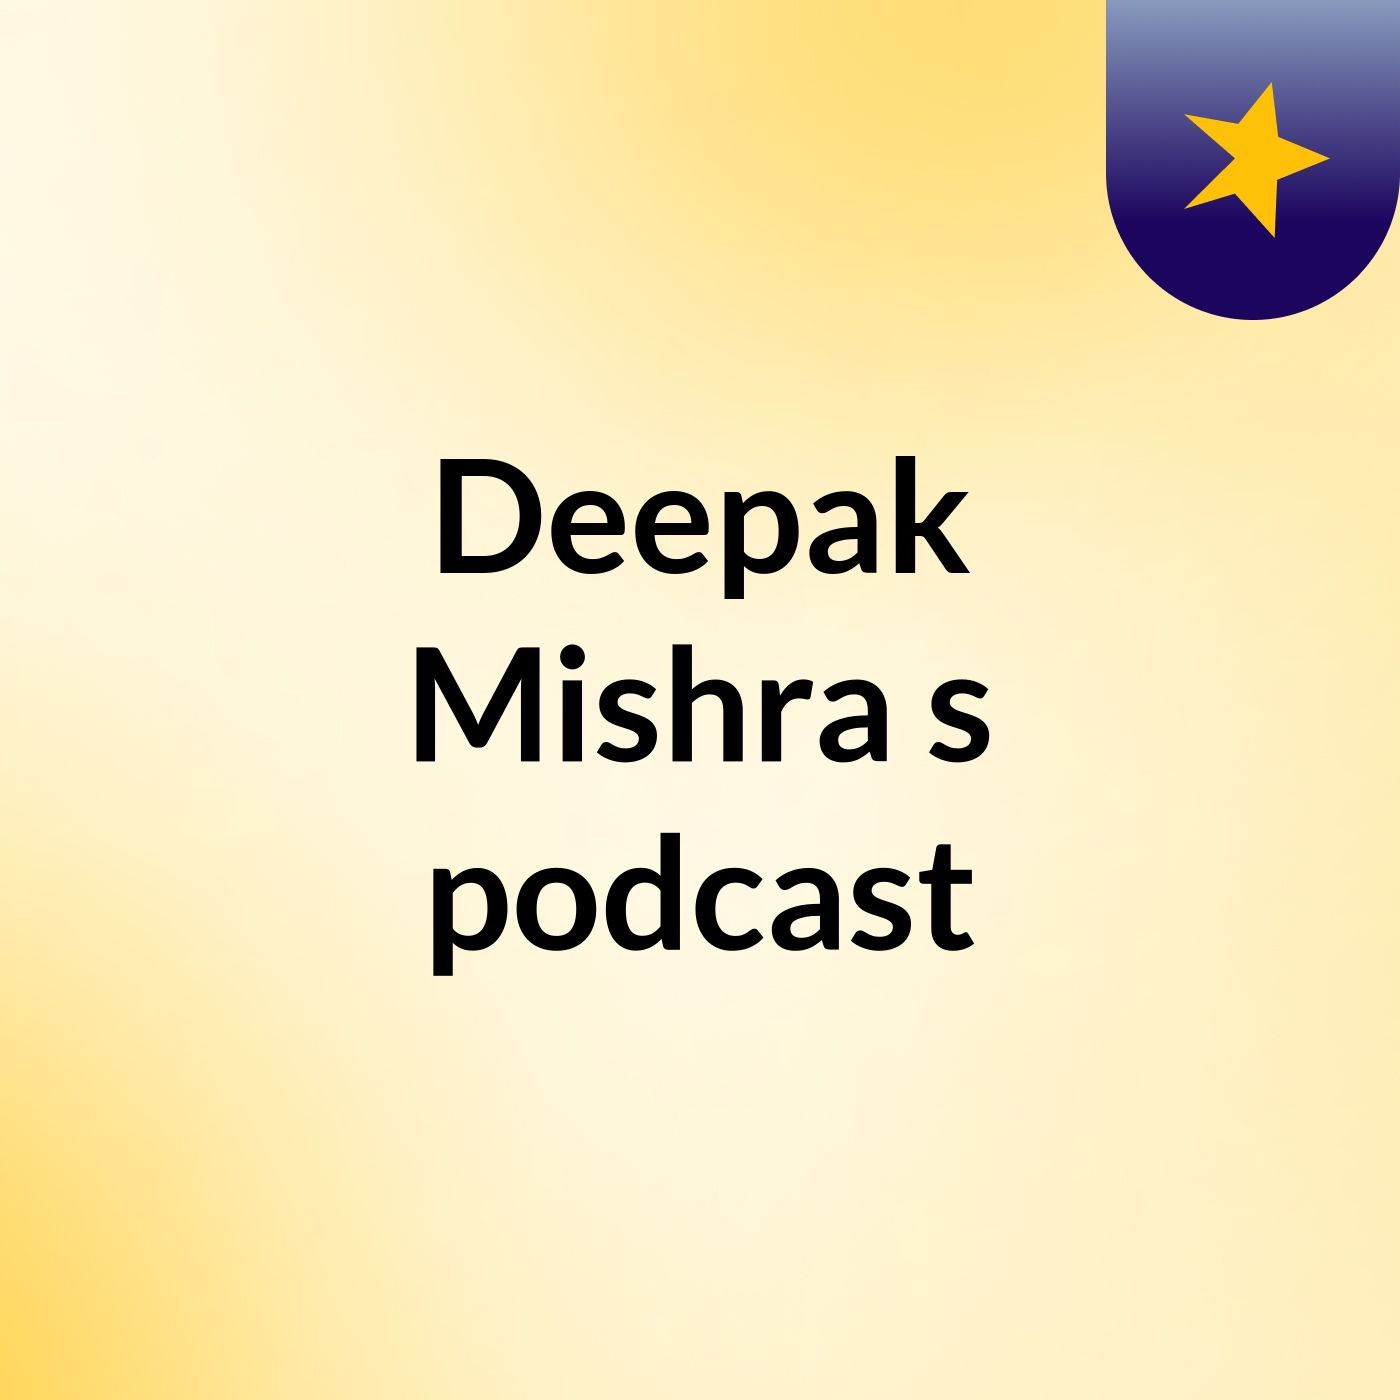 Episode 3 - Deepak Mishra's podcast